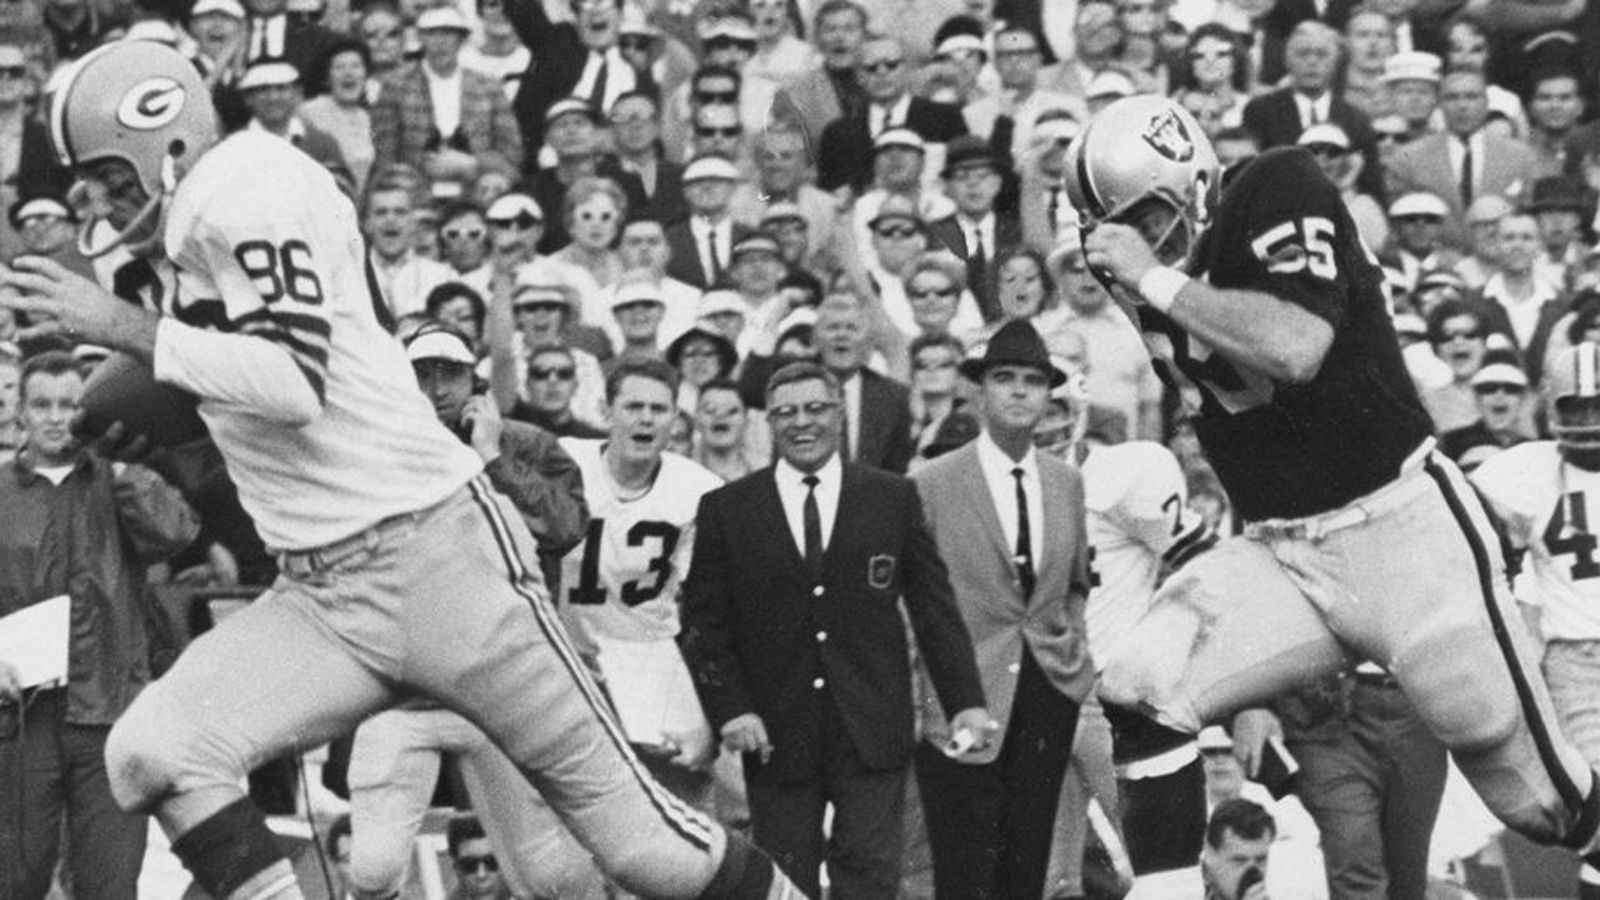 
                <strong>American Football League - Die Geburtsstunde des Super Bowl</strong><br>
                Die AFL und die NFL lieferten sich einen erbitterten Kampf um Spieler und Standorte. Eine Kostenexplosion war die Folge. Daher wurden die beiden Ligen im Jahre 1970 unter dem Dach der NFL zusammengeschlossen. Bereits ab 1967 spielte der Meister der NFL gegen den Meister der AFL - das war praktisch die Geburtsstunde des Super Bowl.
              